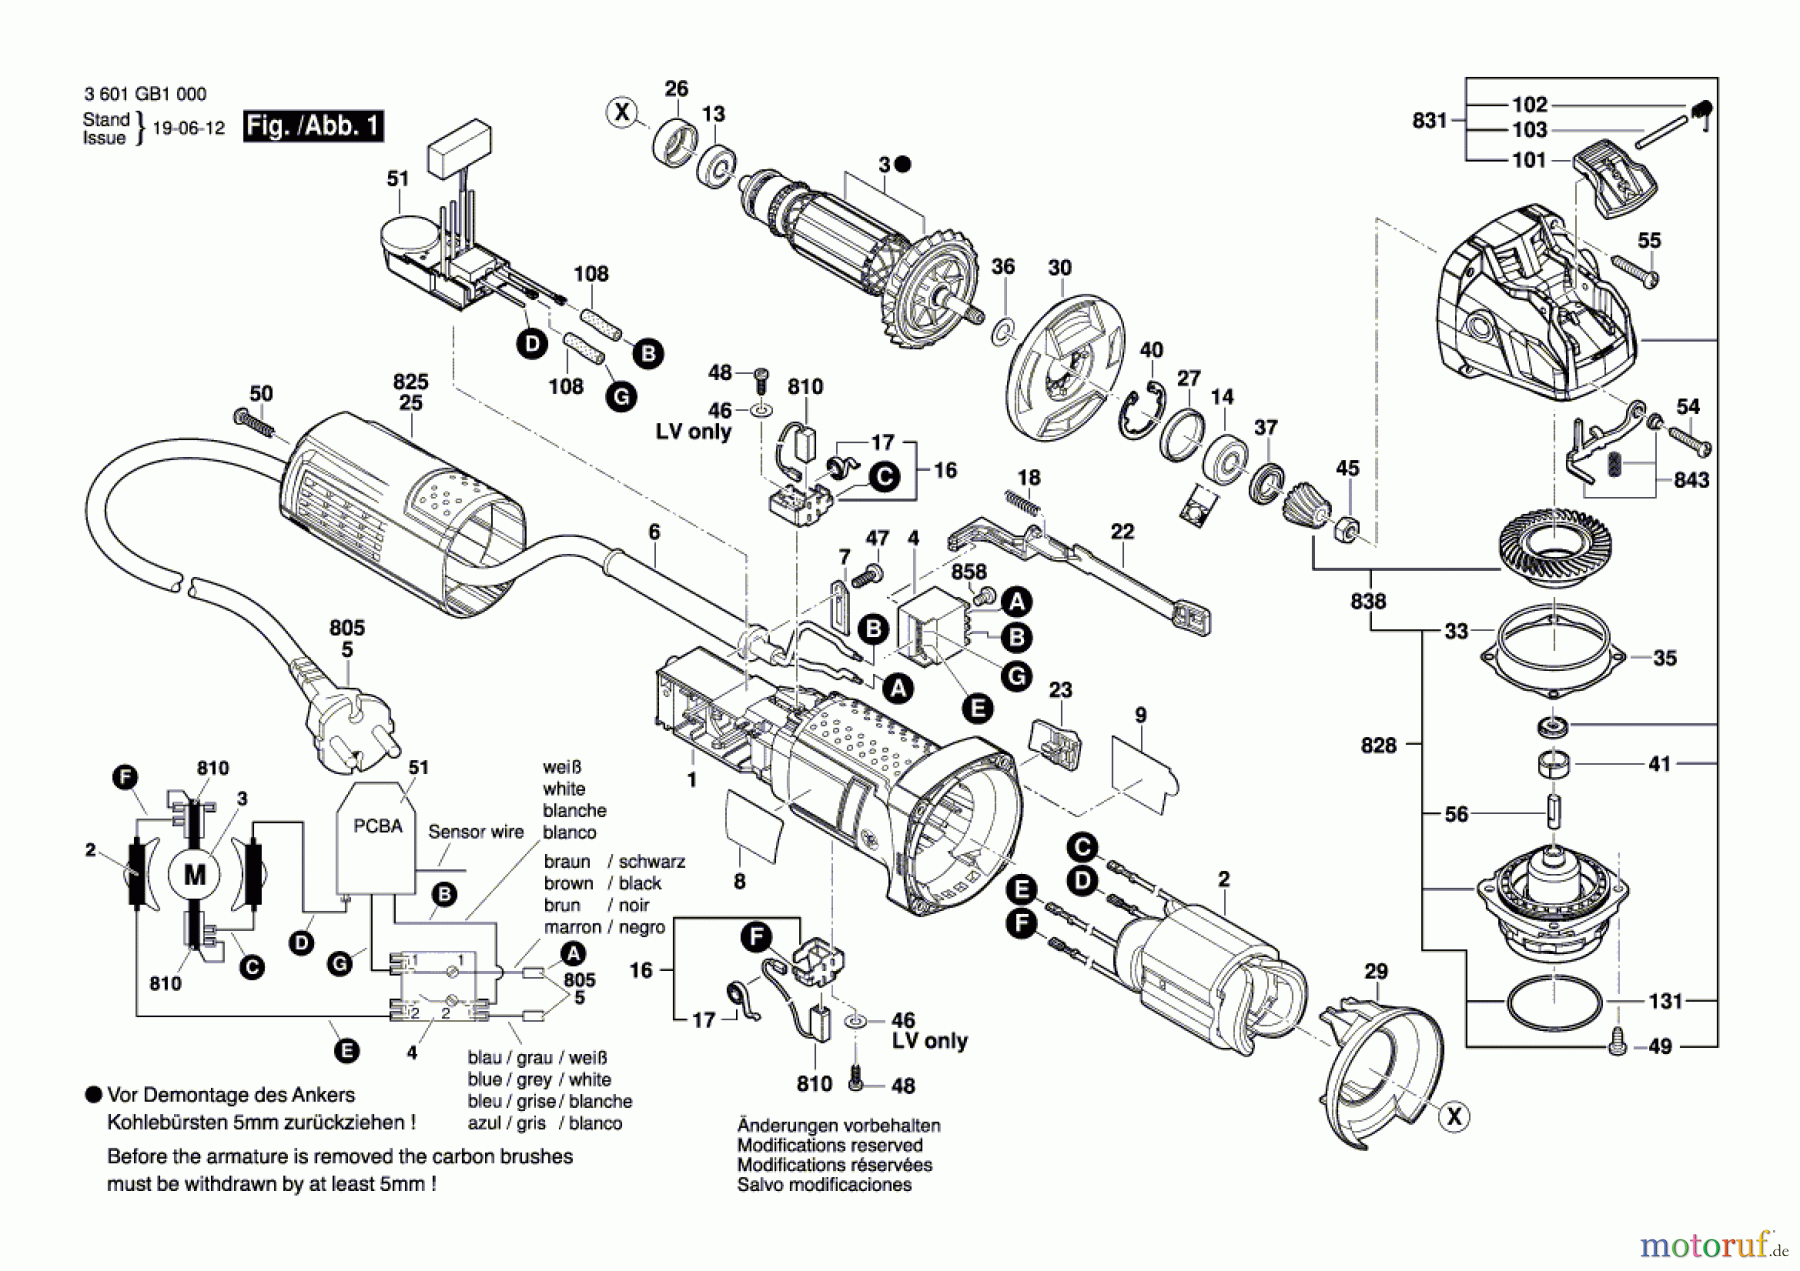  Bosch Werkzeug Winkelschleifer GWX 9-115 S Seite 1